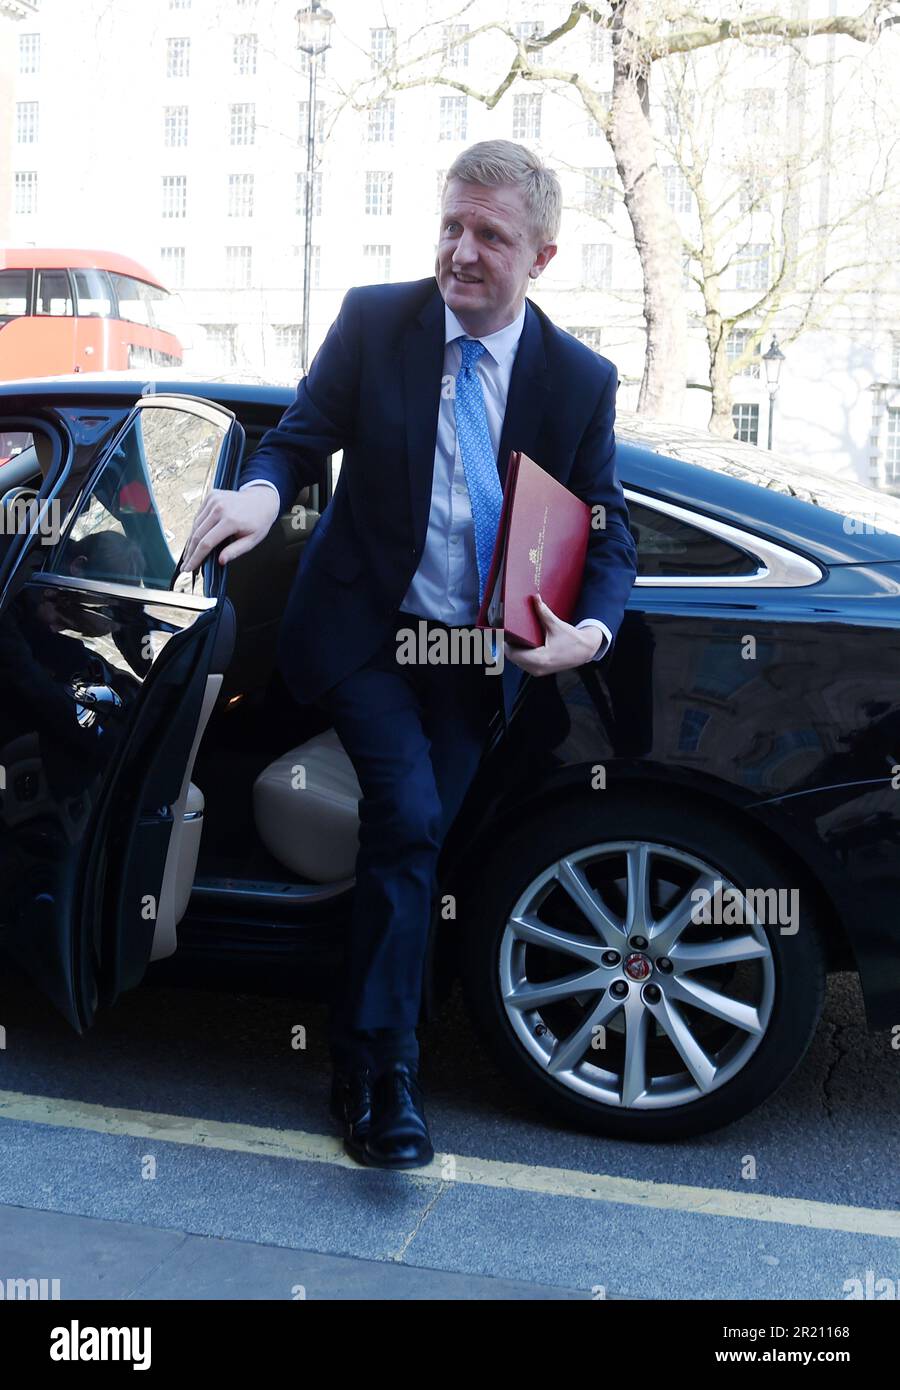 Oliver Dowden, secrétaire à la Culture, arrive au bureau du cabinet à Whitehall, à Londres, avant une réunion d'urgence de la COBRA, à mesure que l'inquiétude se développe au sujet de l'épidémie de coronavirus COVID-19. Lundi 16/03/2020 Banque D'Images